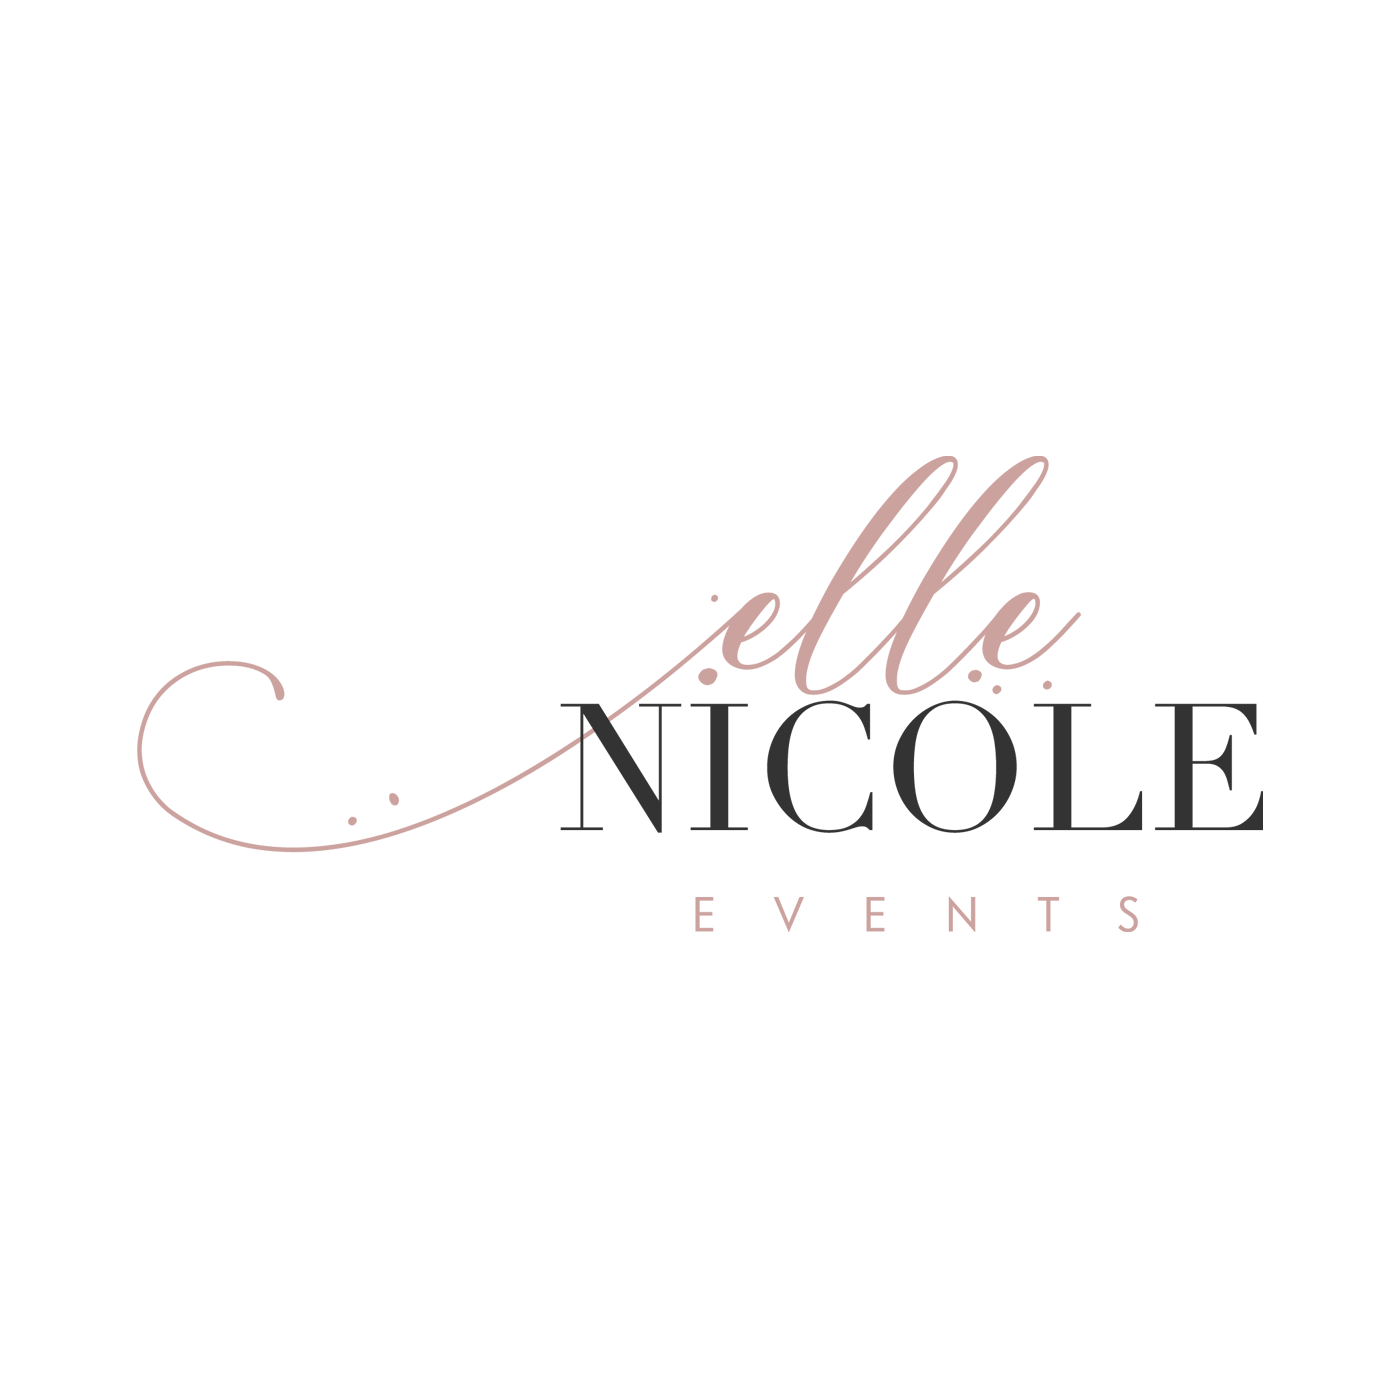 Elle Nicole Events